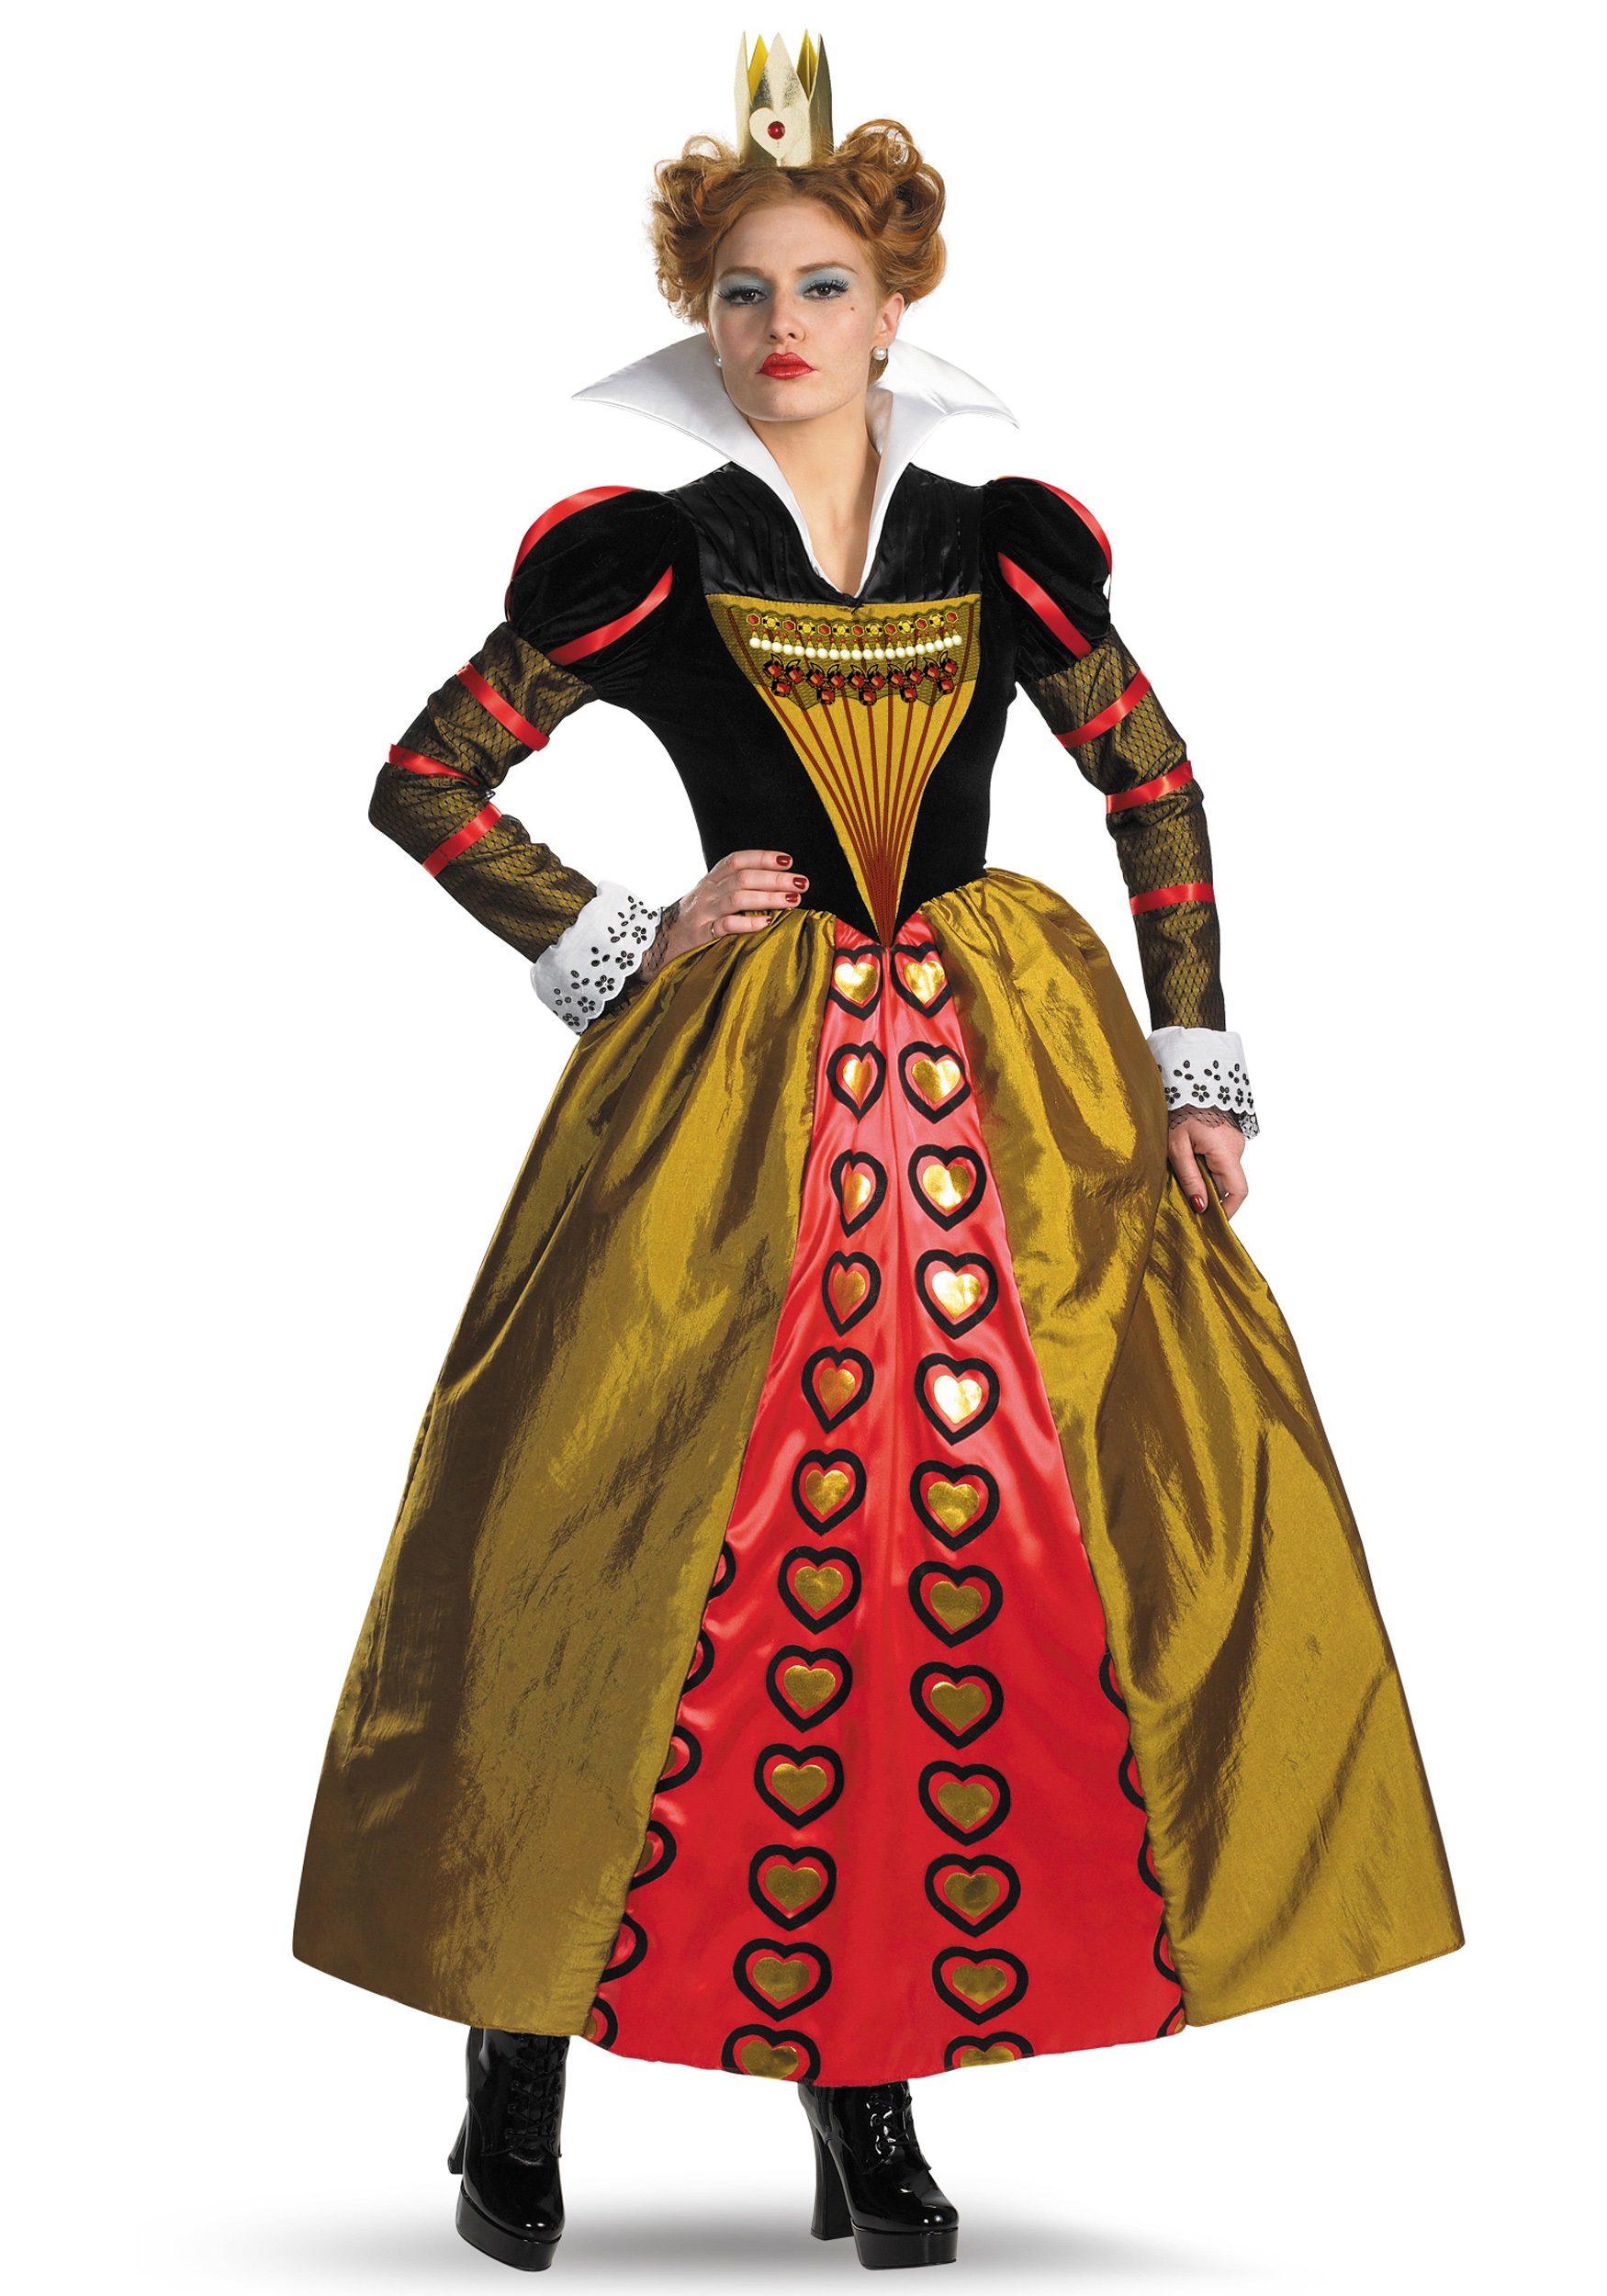 queen of hearts costume alice in wonderland